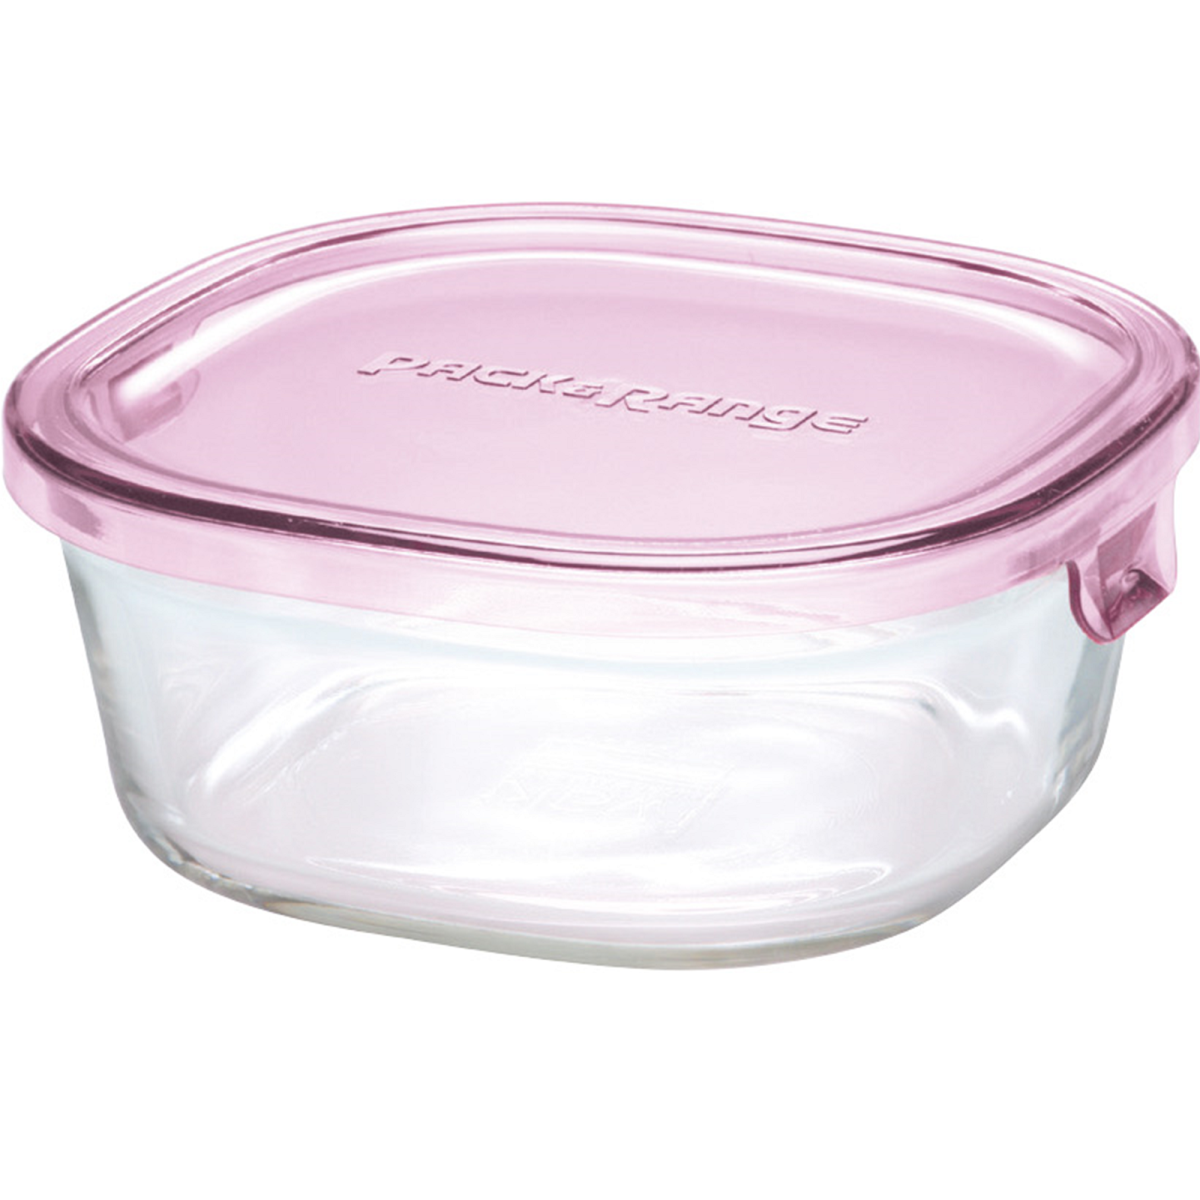 イワキ パック&レンジ 450ml 耐熱ガラス保存容器 ピンク